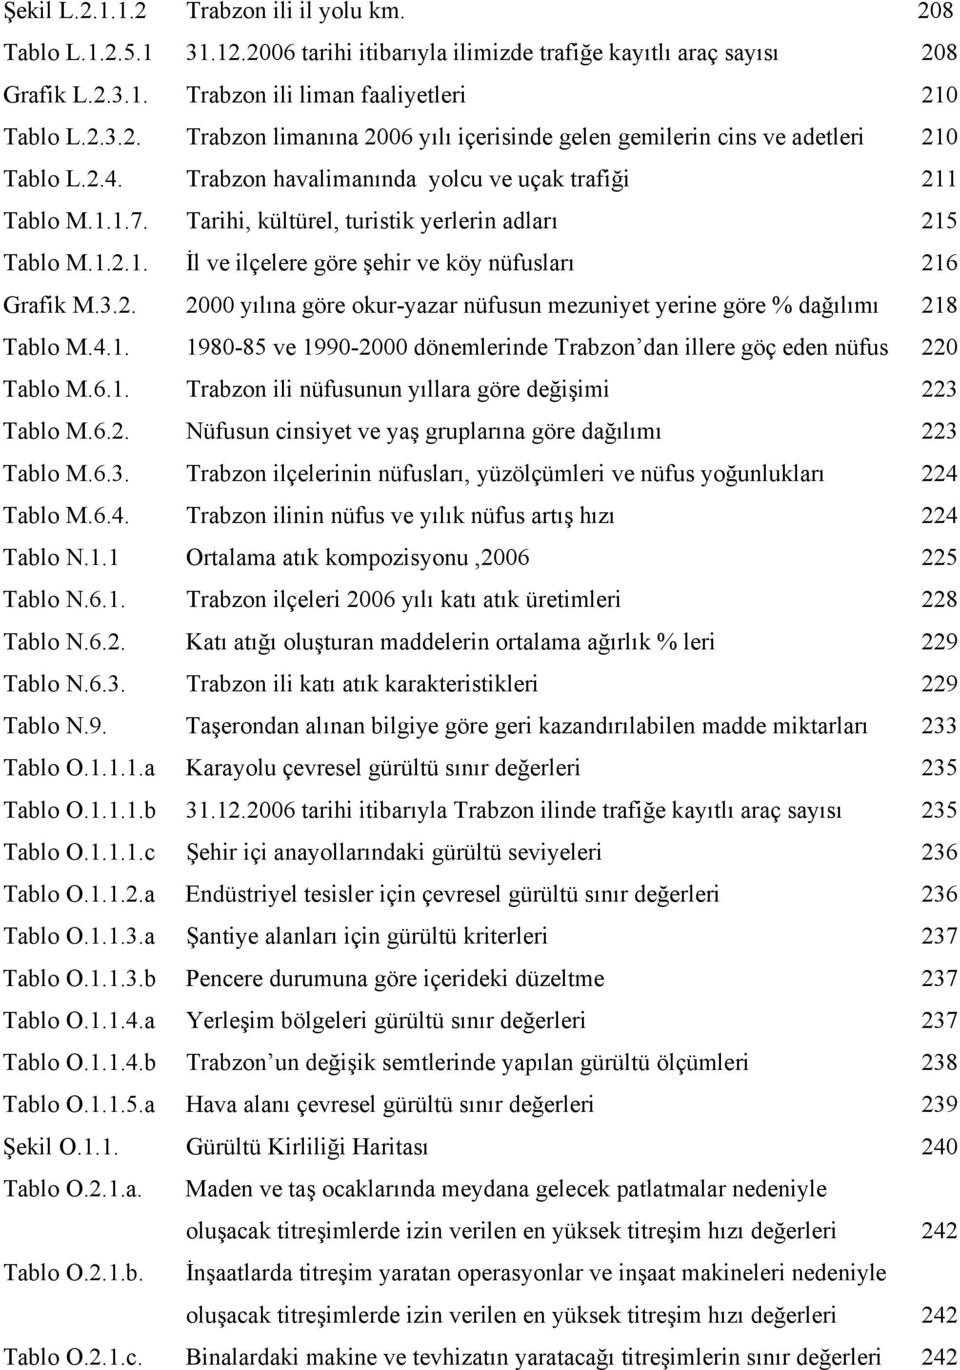 4.1. 1980-85 ve 1990-2000 dönemlerinde Trabzon dan illere göç eden nüfus 220 Tablo M.6.1. Trabzon ili nüfusunun yıllara göre değişimi 223 Tablo M.6.2. Nüfusun cinsiyet ve yaş gruplarına göre dağılımı 223 Tablo M.